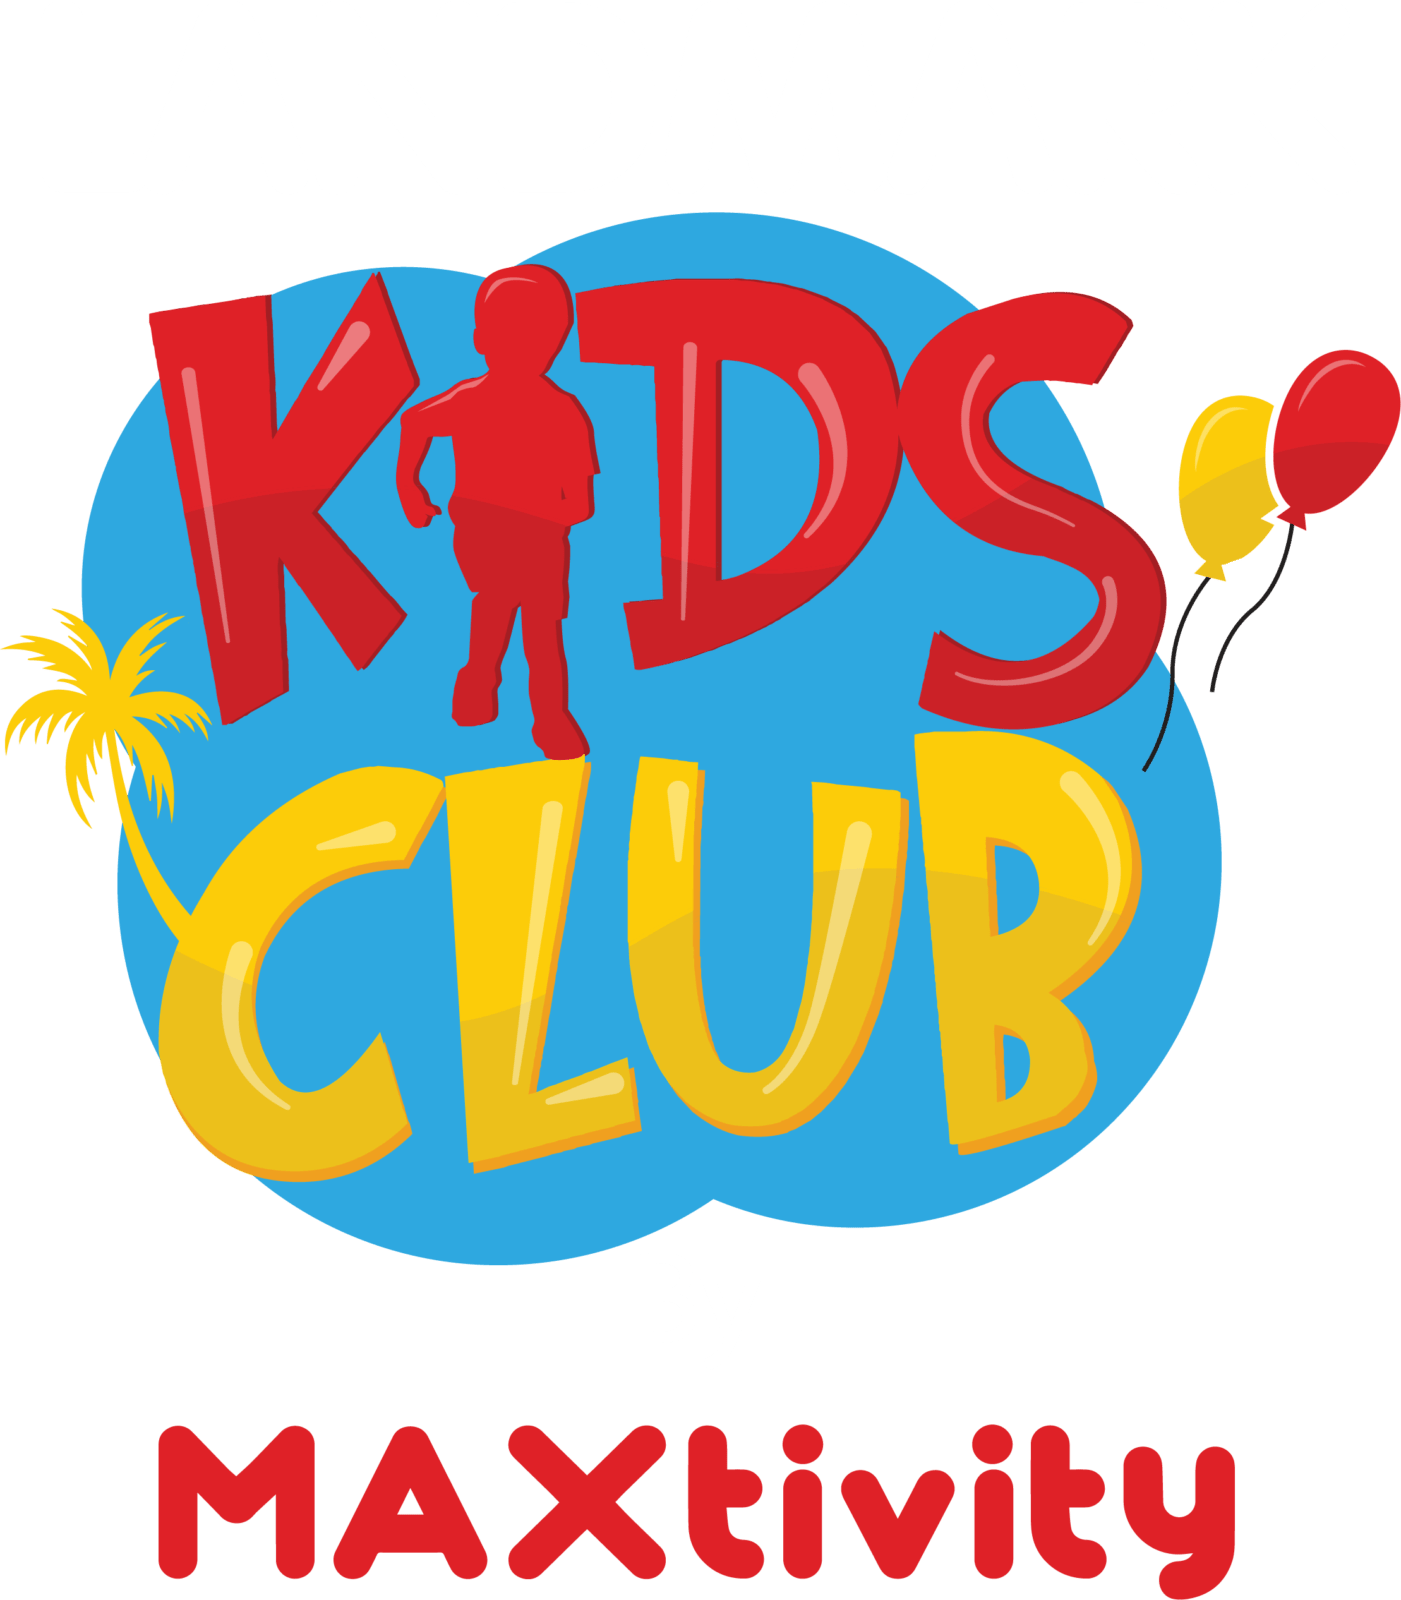 Landmark Kids Club By Maxtivity